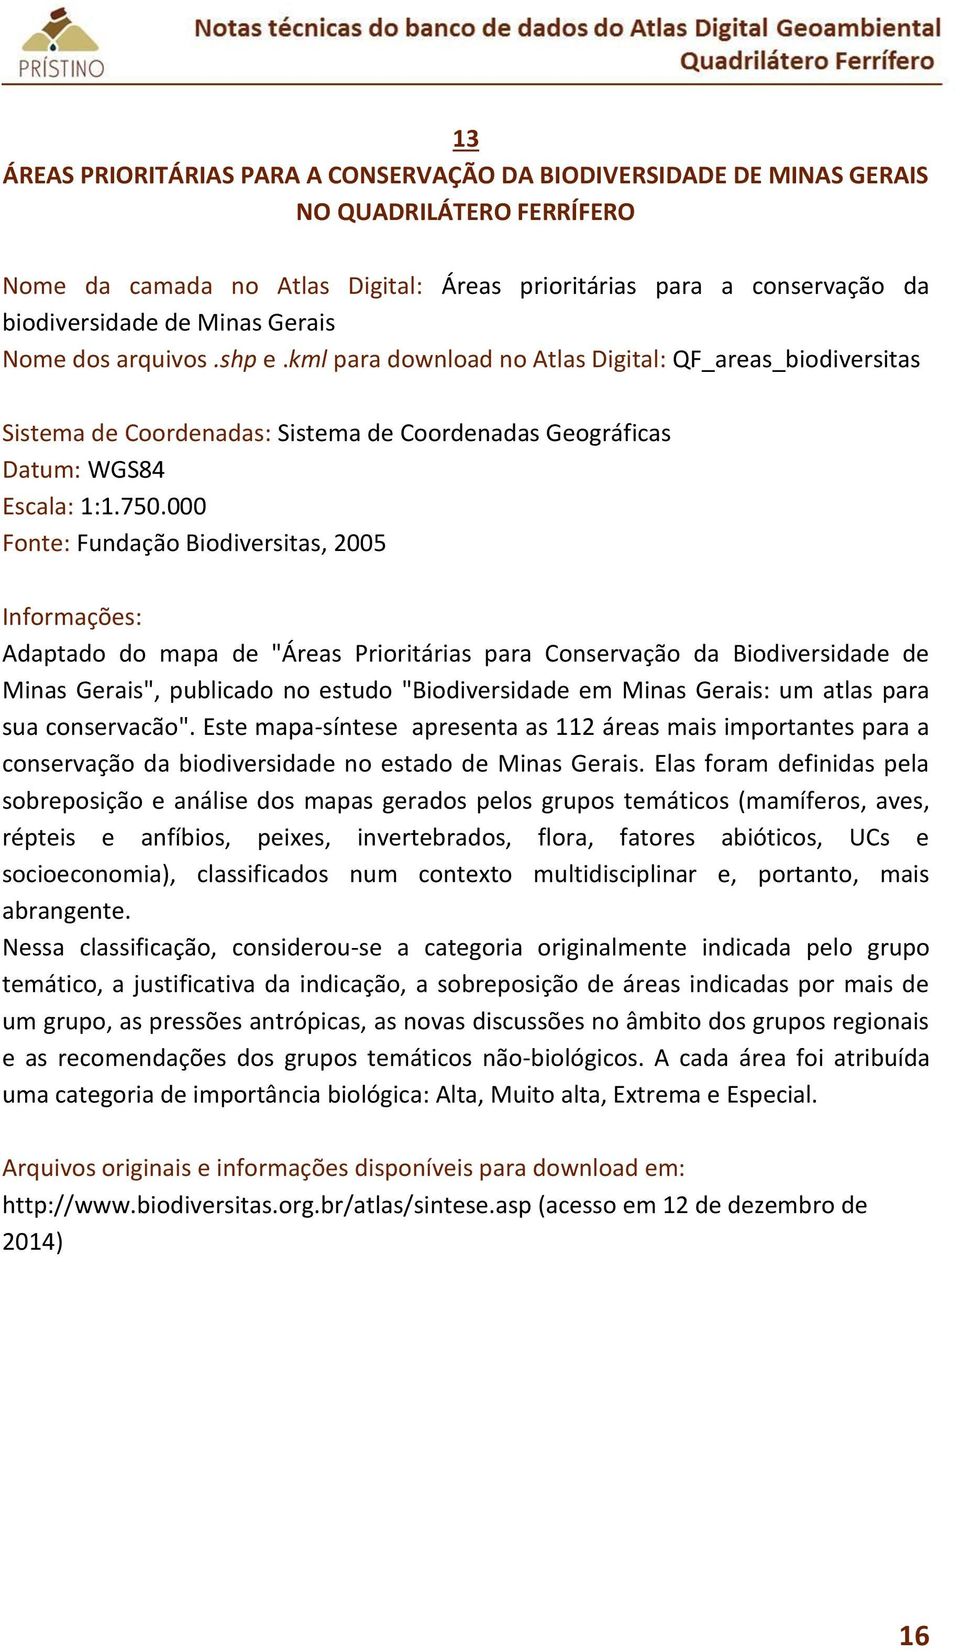 000 Fonte: Fundação Biodiversitas, 2005 Adaptado do mapa de "Áreas Prioritárias para Conservação da Biodiversidade de Minas Gerais", publicado no estudo "Biodiversidade em Minas Gerais: um atlas para